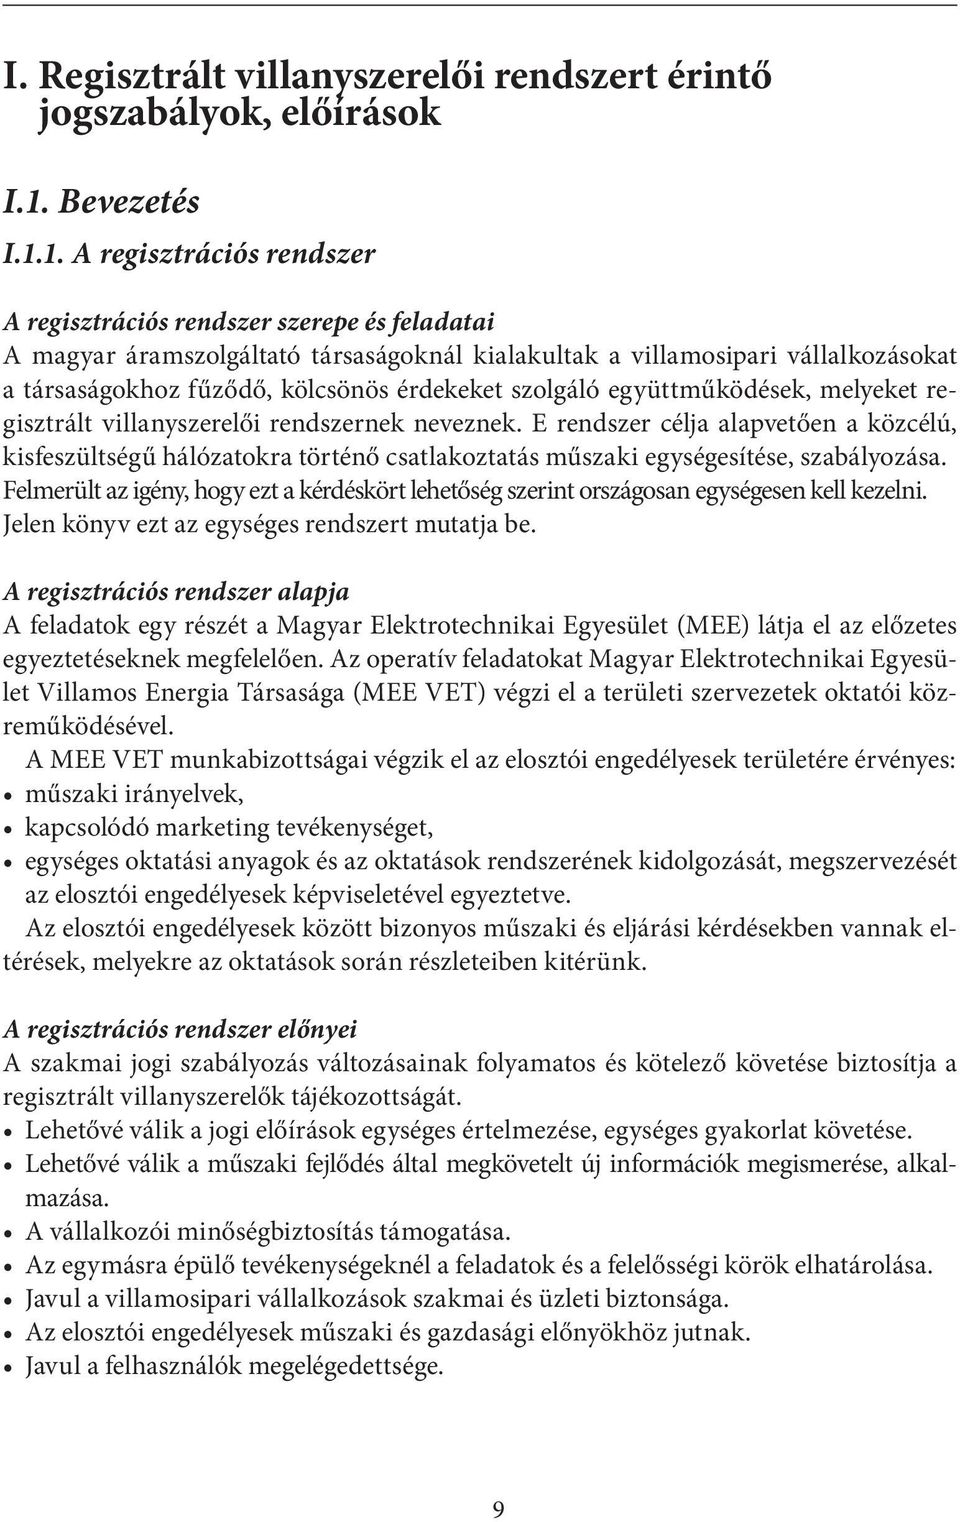 1. A regisztrációs rendszer A regisztrációs rendszer szerepe és feladatai A magyar áramszolgáltató társaságoknál kialakultak a villamosipari vállalkozásokat a társaságokhoz fűződő, kölcsönös